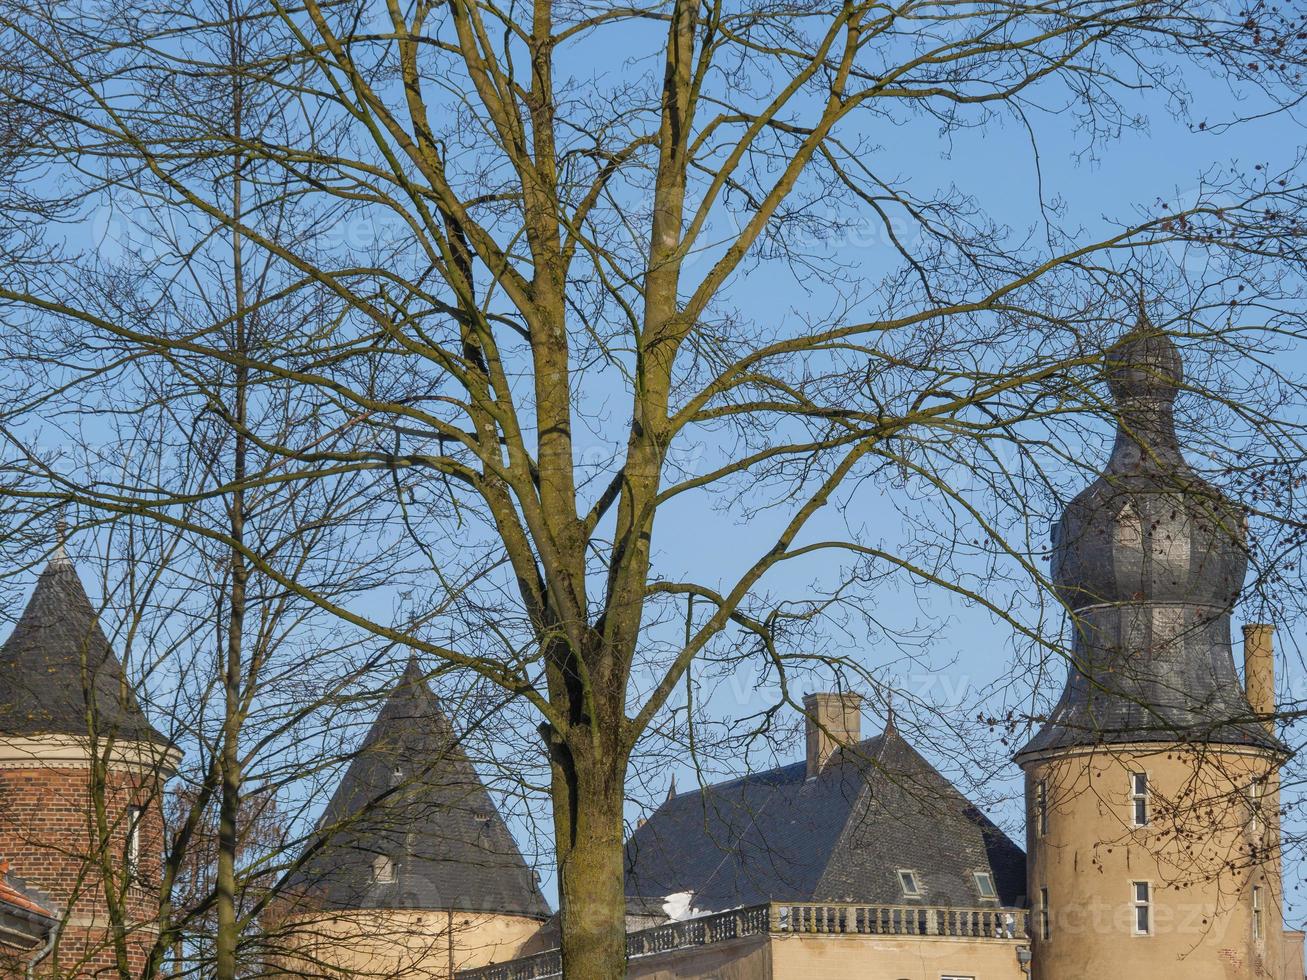 Winterzeit auf einem Schloss in Deutschland foto